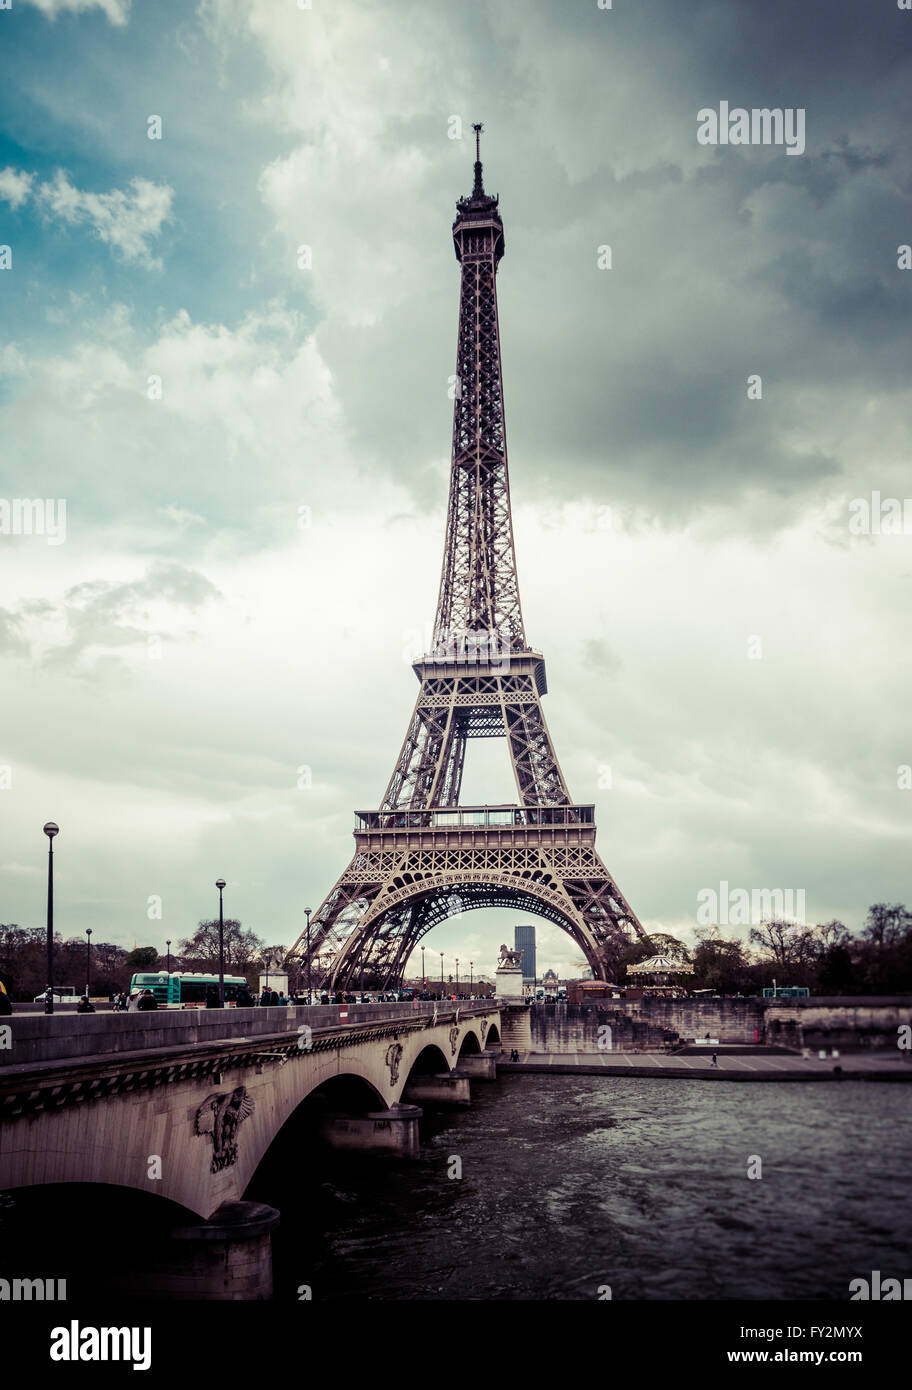 La Tour Eiffel avec pont d'Iéna et de la Seine, Paris, France Banque D'Images